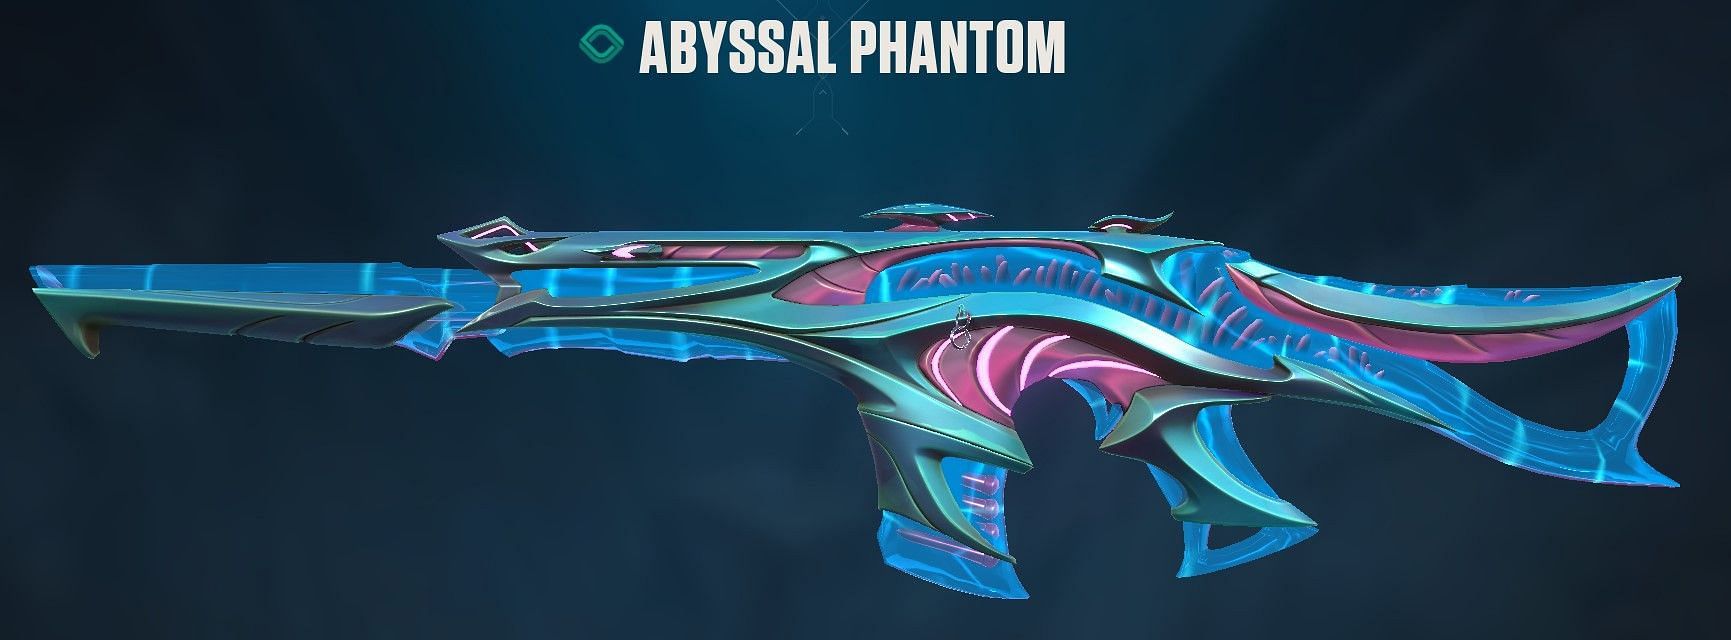 Abyssal Phantom (Image via Riot Games)